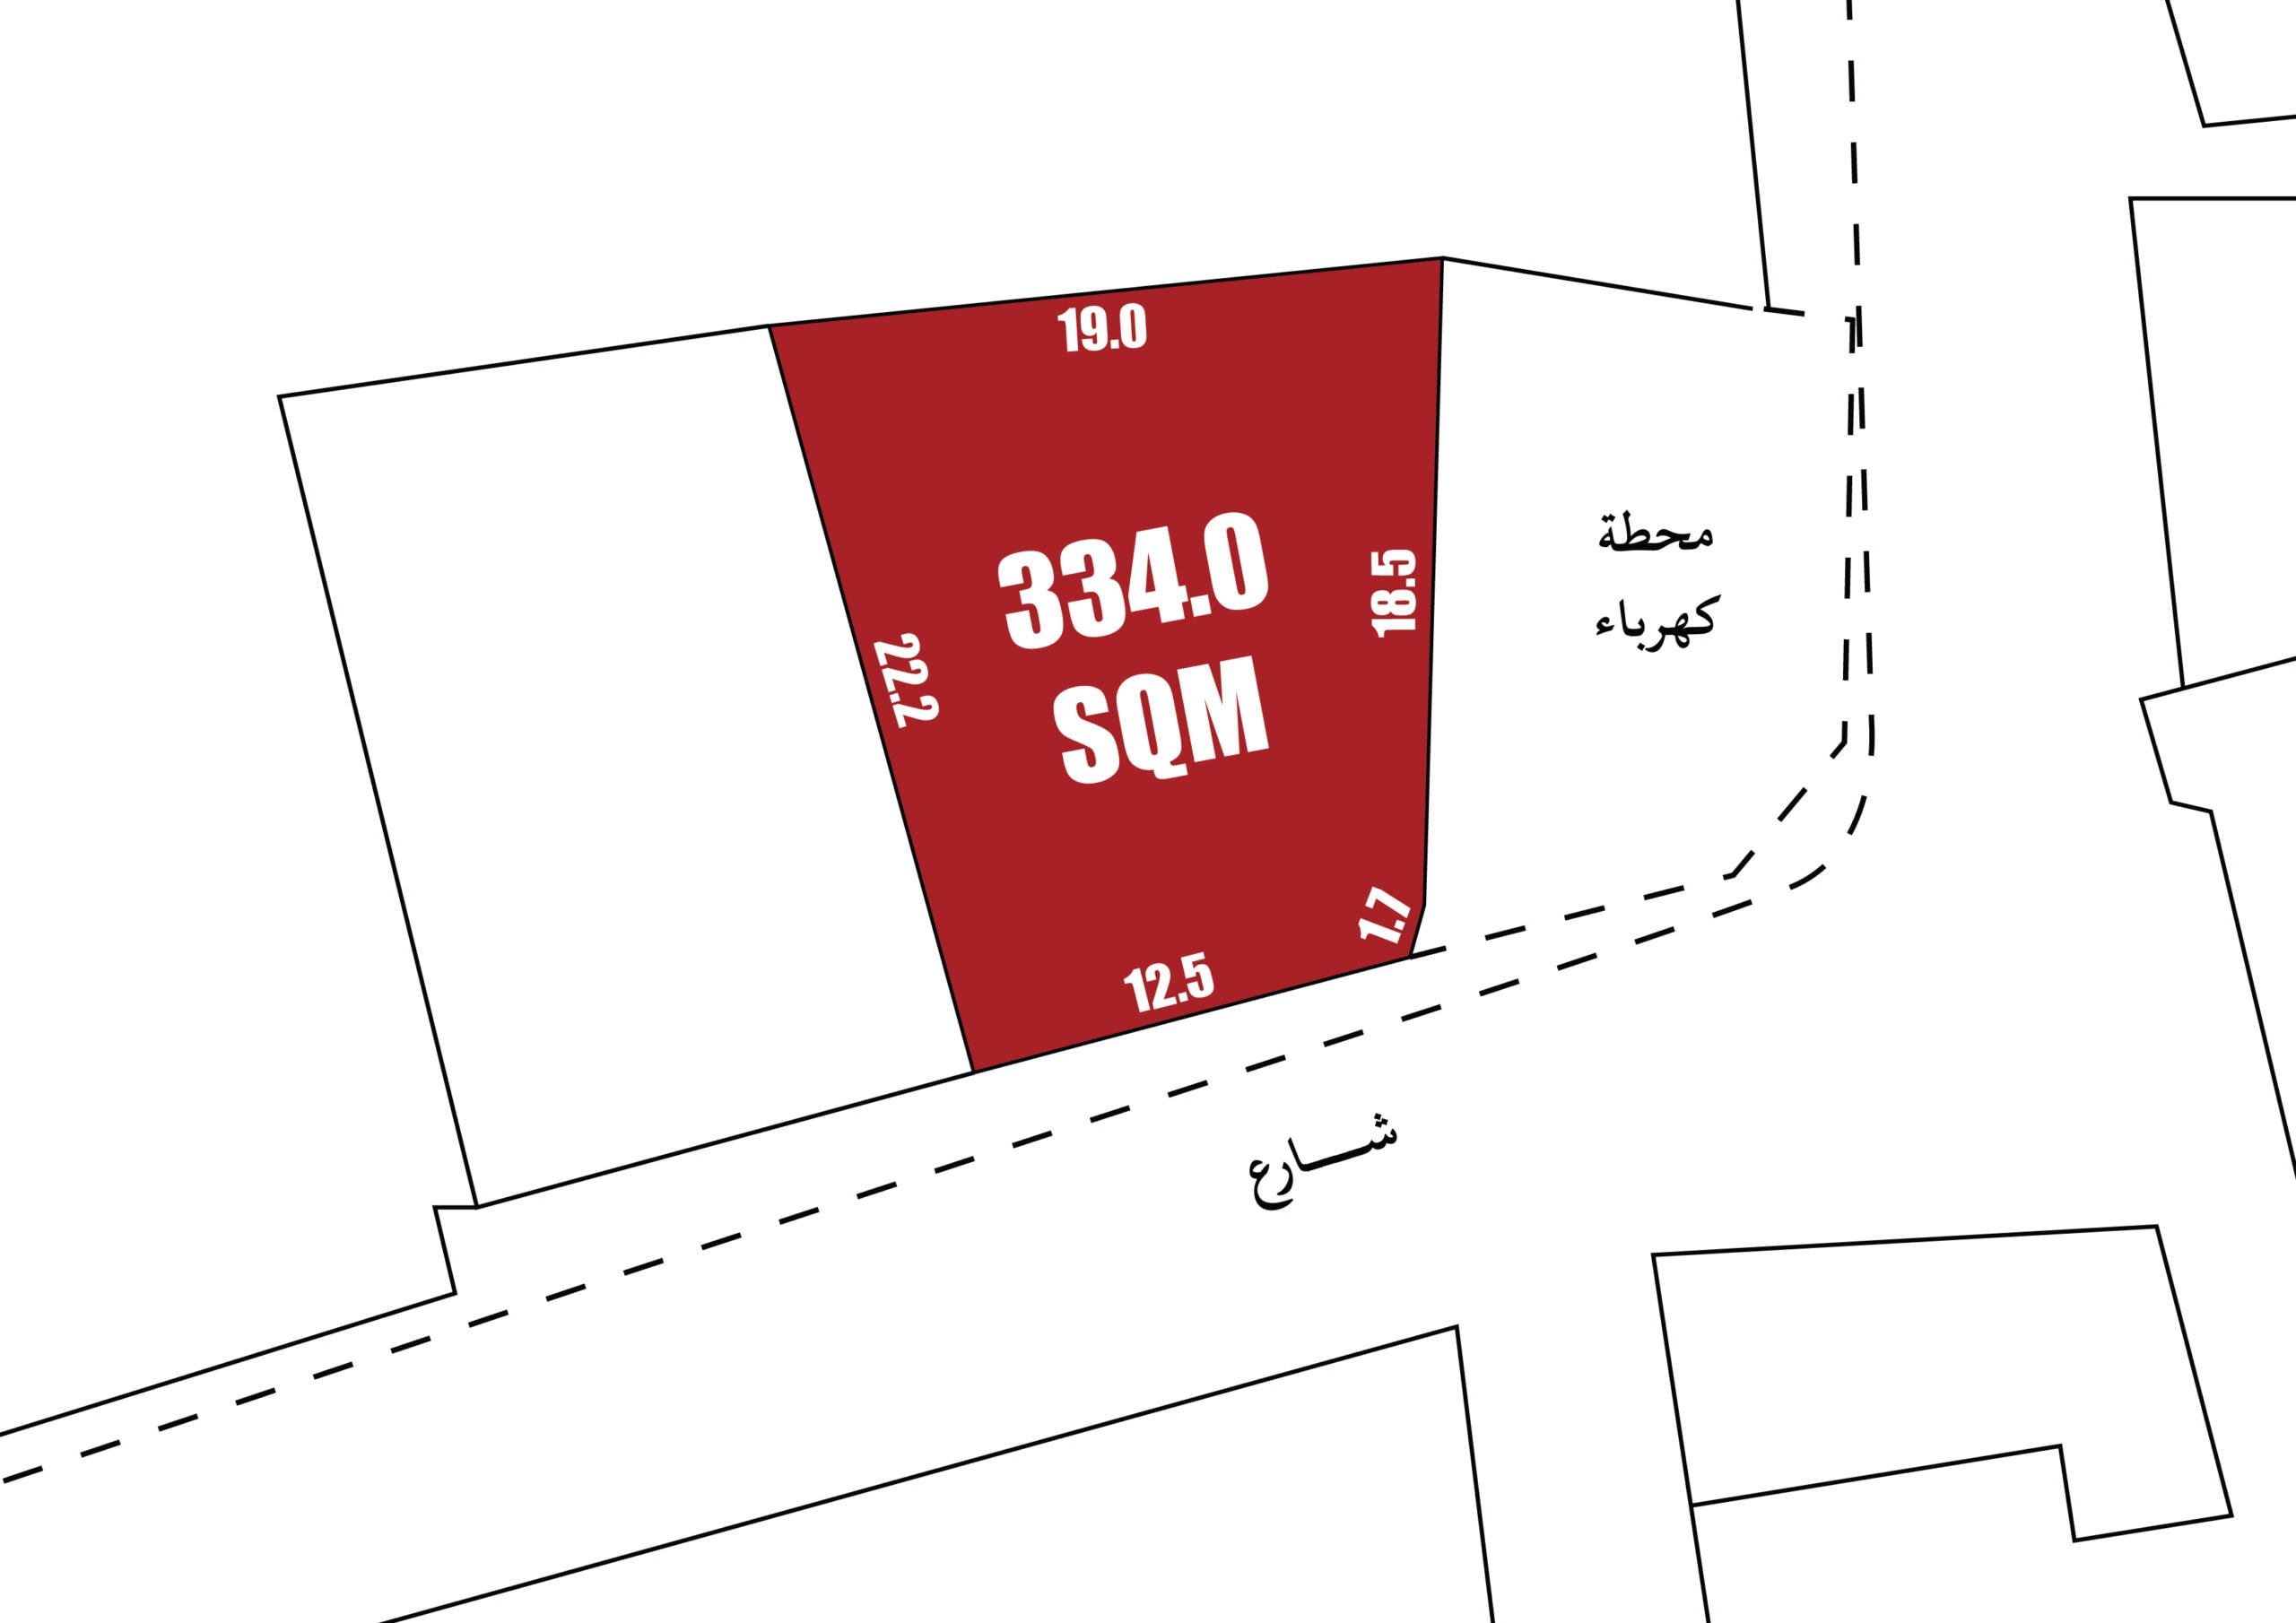 قطعة أرض بمساحة 334.0 متر مربع باللون الأحمر، ومقاساتها موضحة في مخطط تخطيطي.